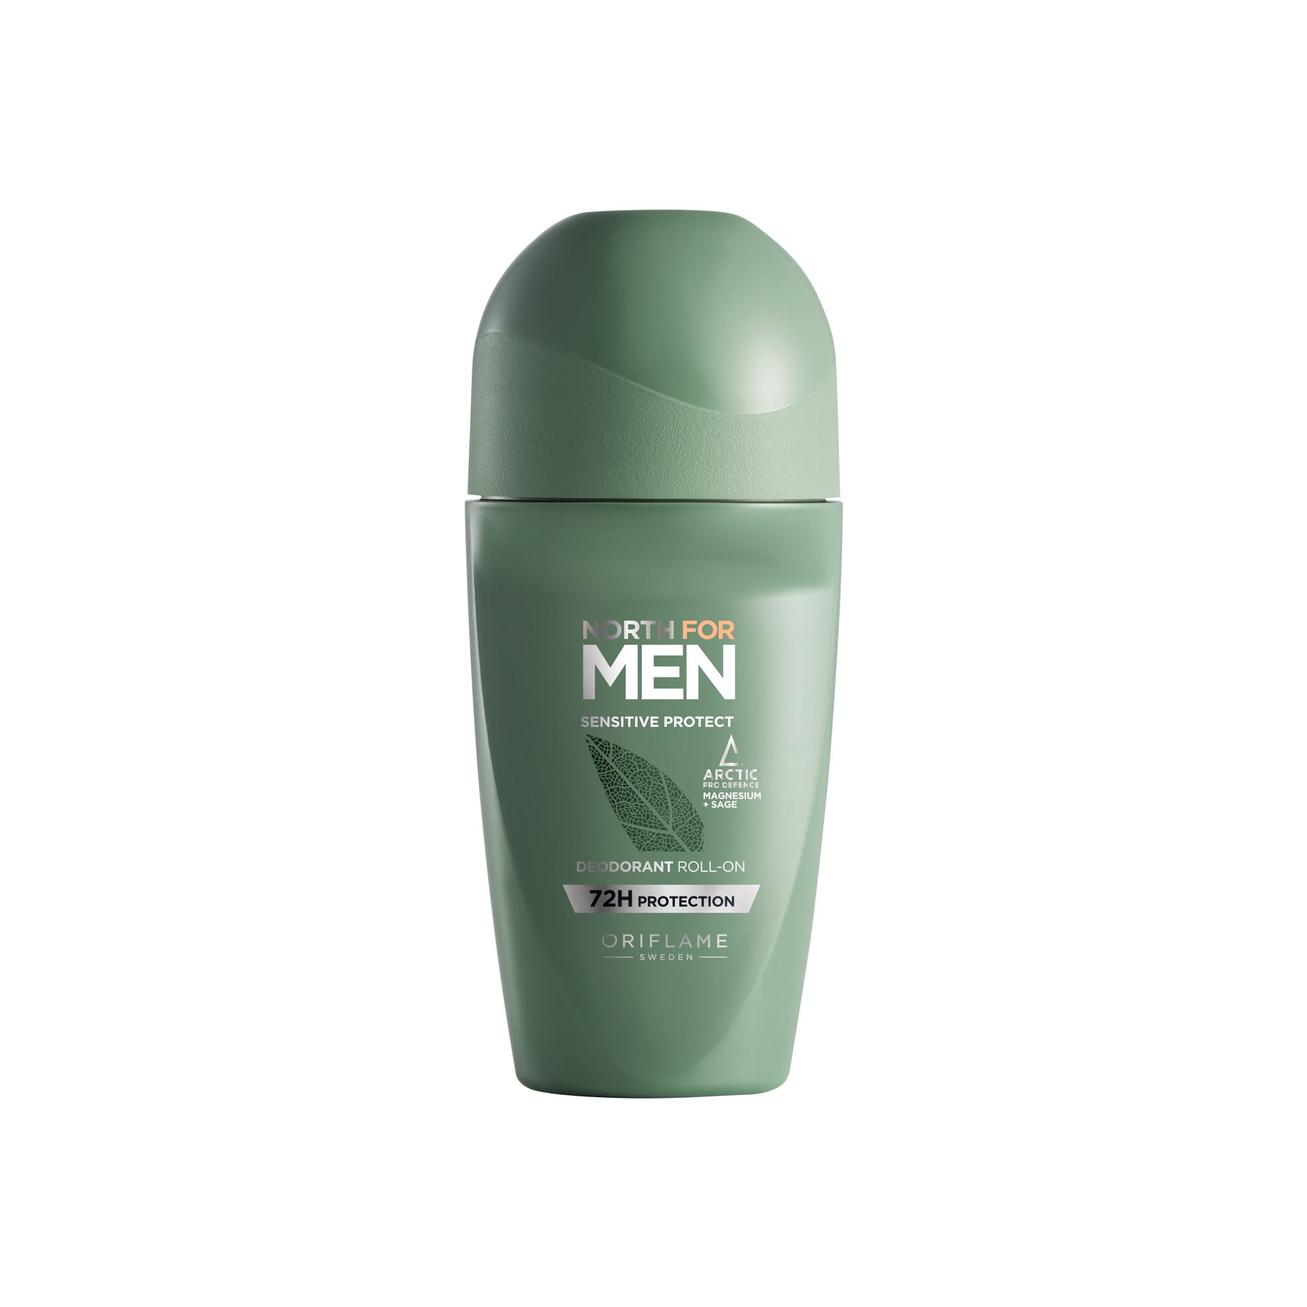 Oferta de Desodorante Roll-On Sensitive Protect North For Men por 8€ en Oriflame